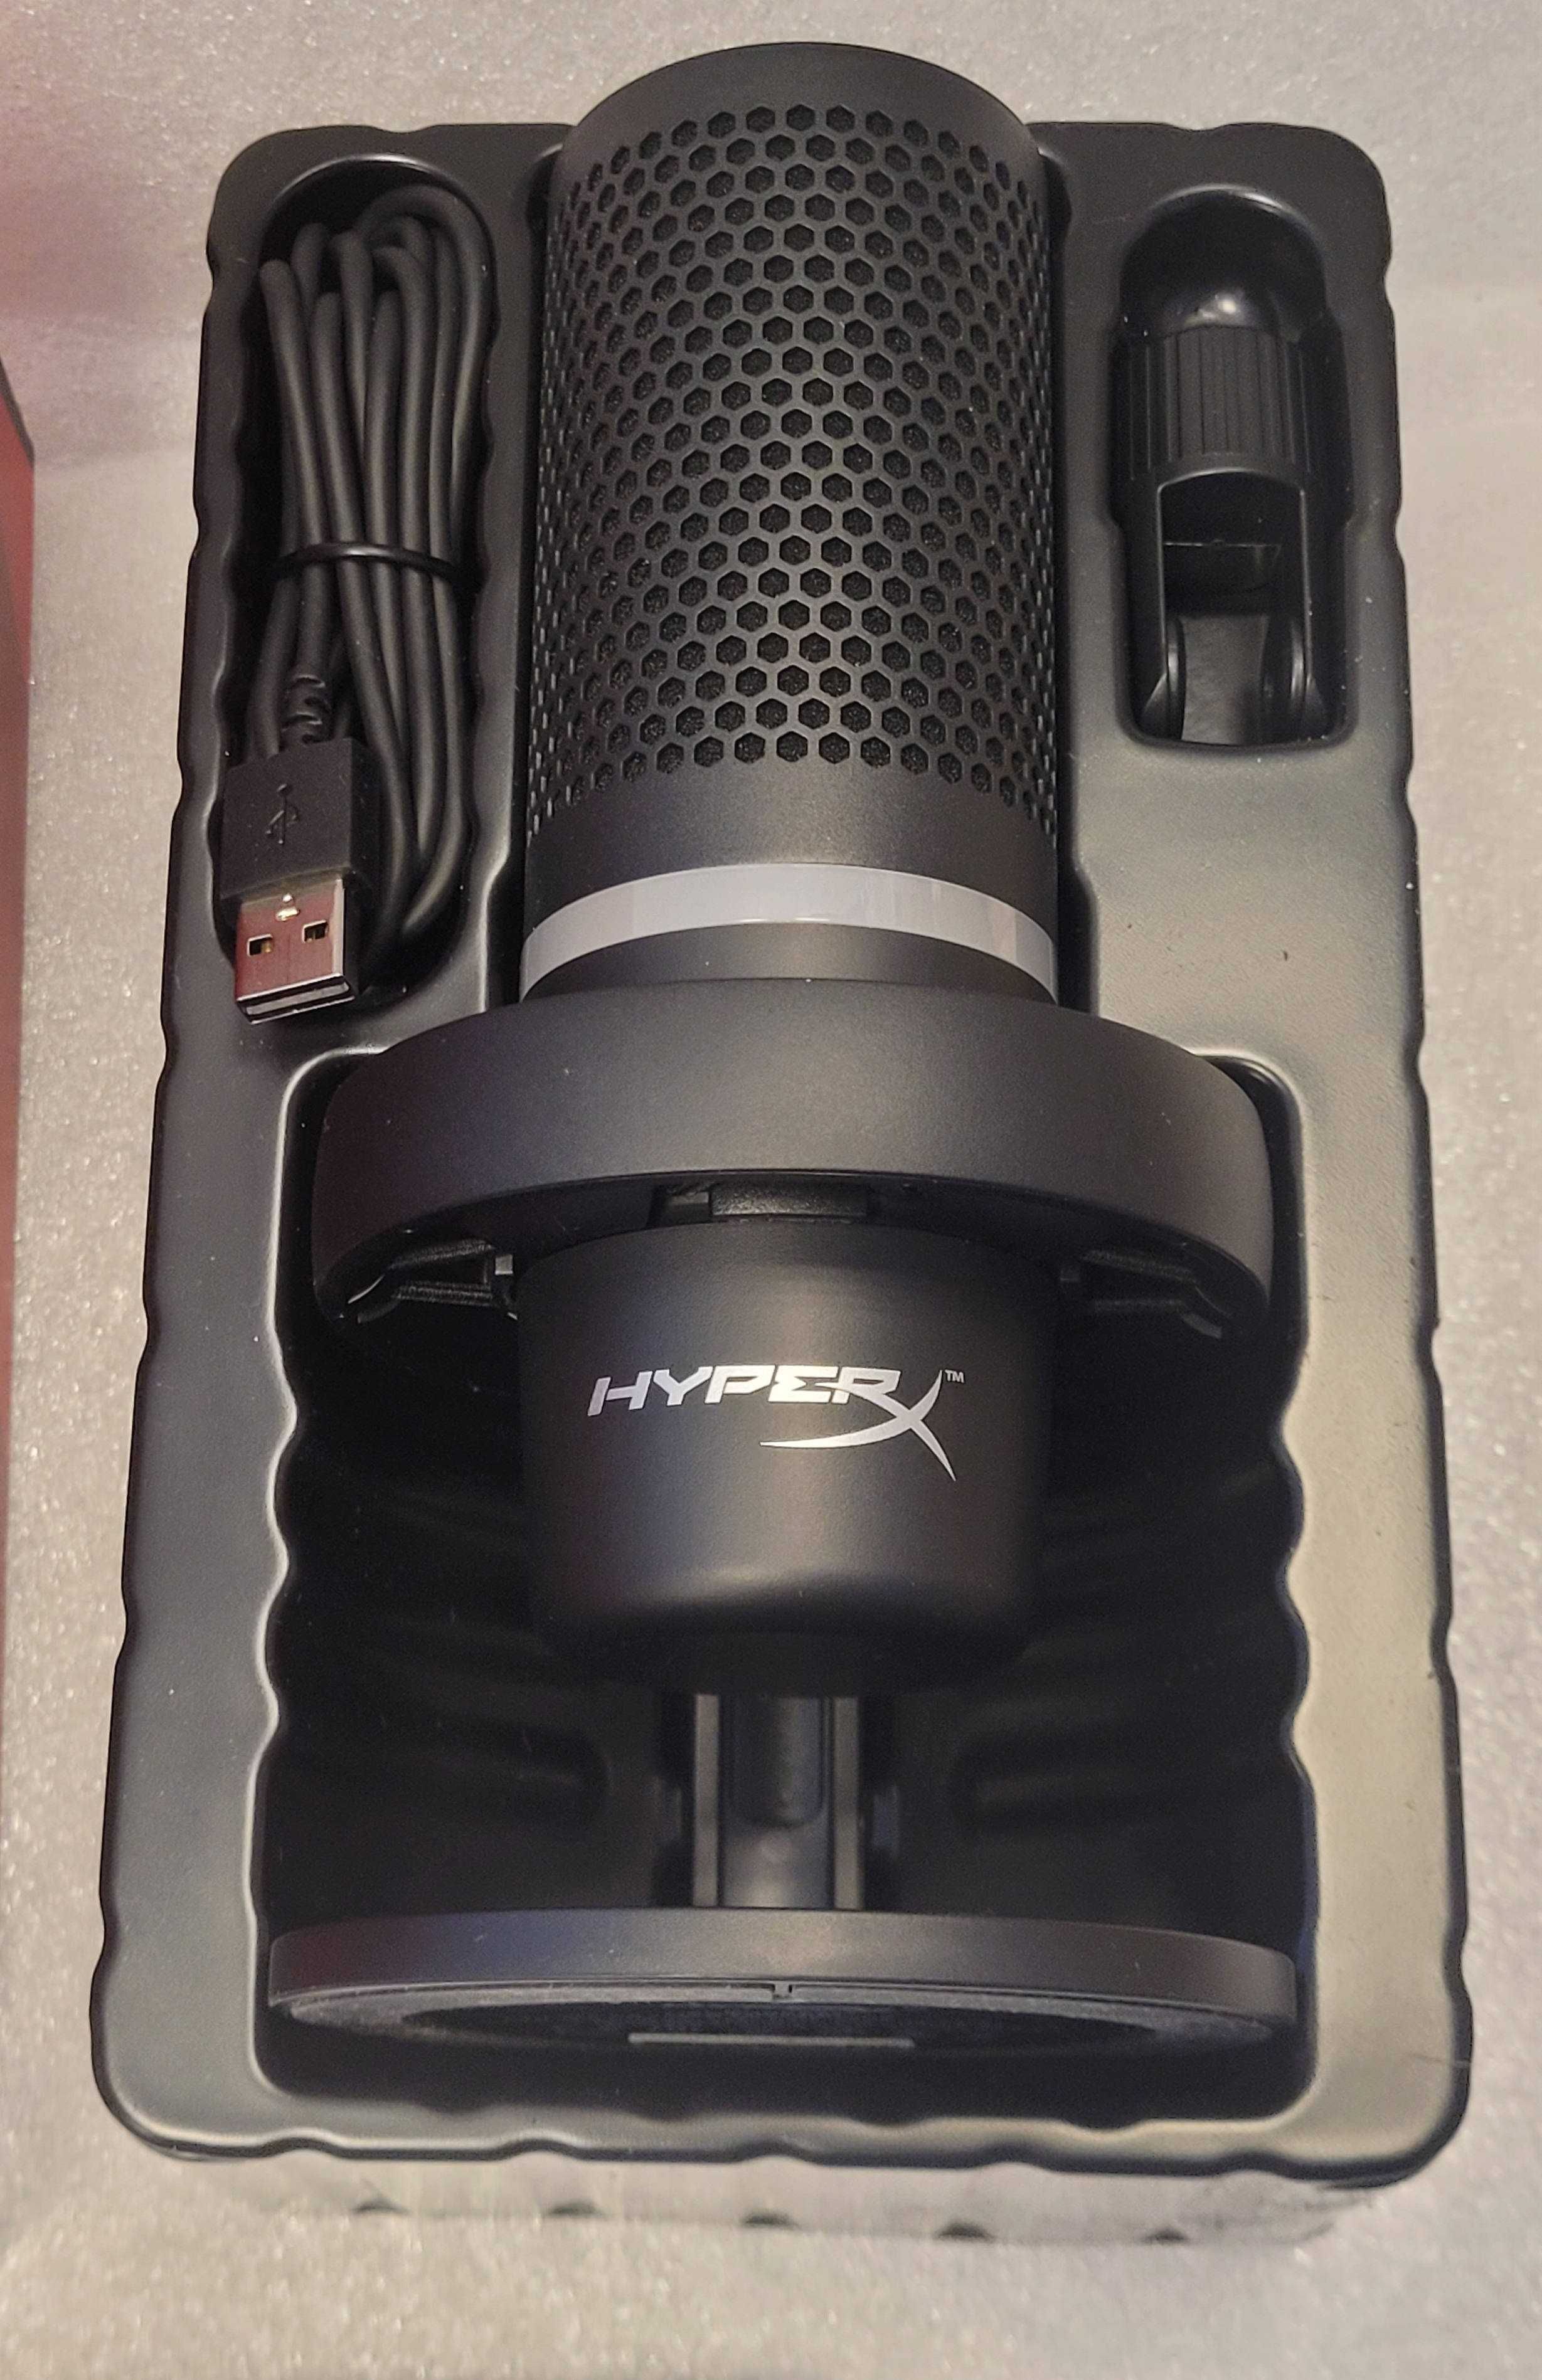 Mikrofon HyperX DuoCast Przewodowy Pojemnościowy Ps4 Ps5 Pudełko